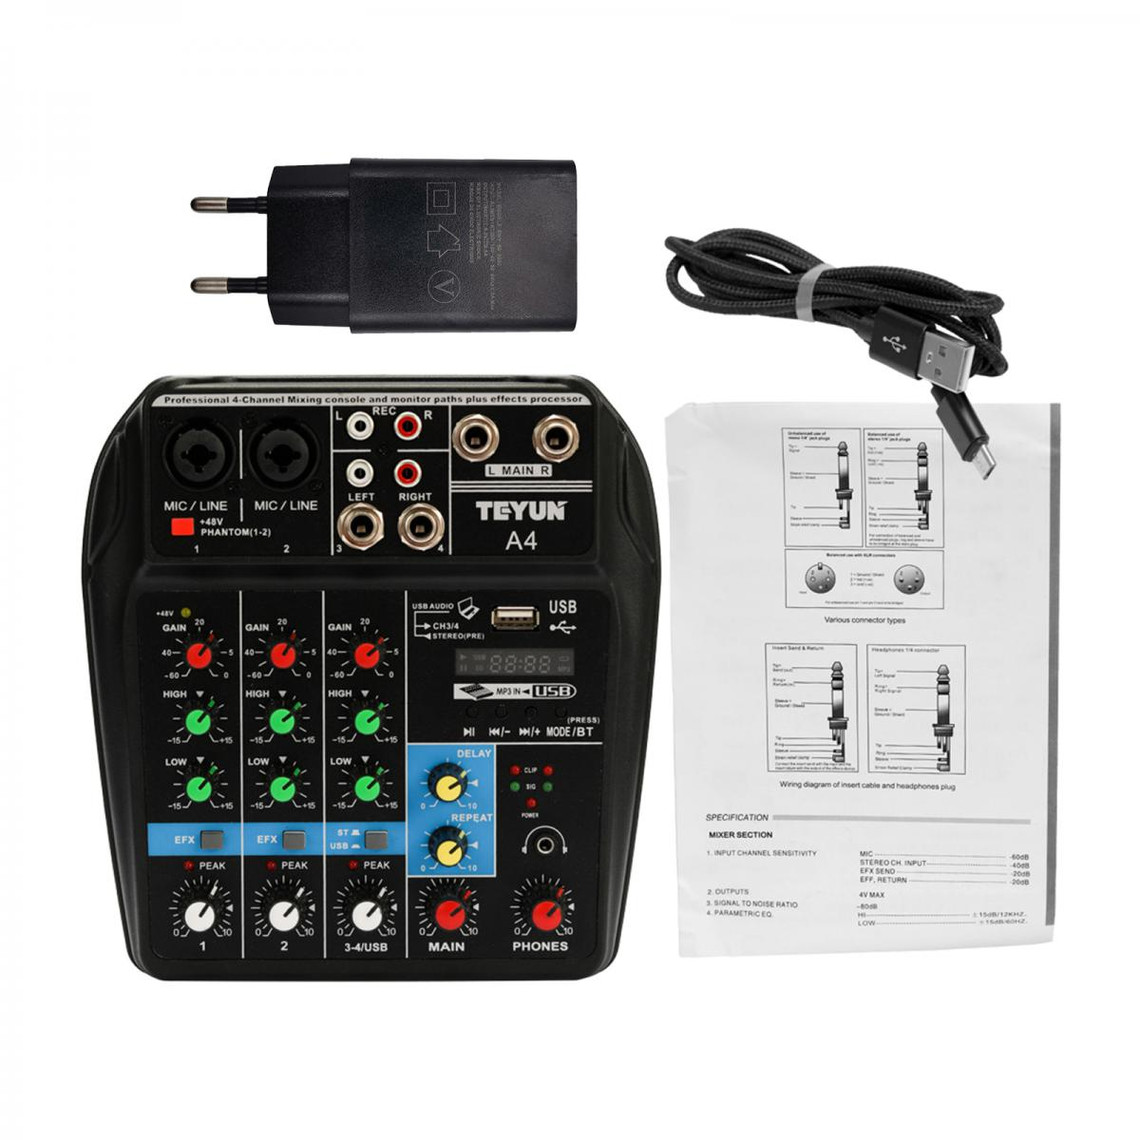 99 effets DSP intégrés alimentation fantôme 48 V carte son avec égaliseur 3 bandes Micfuns Console de mixage professionnel audio DJ mono 8 canaux avec interface USB Bluetooth 